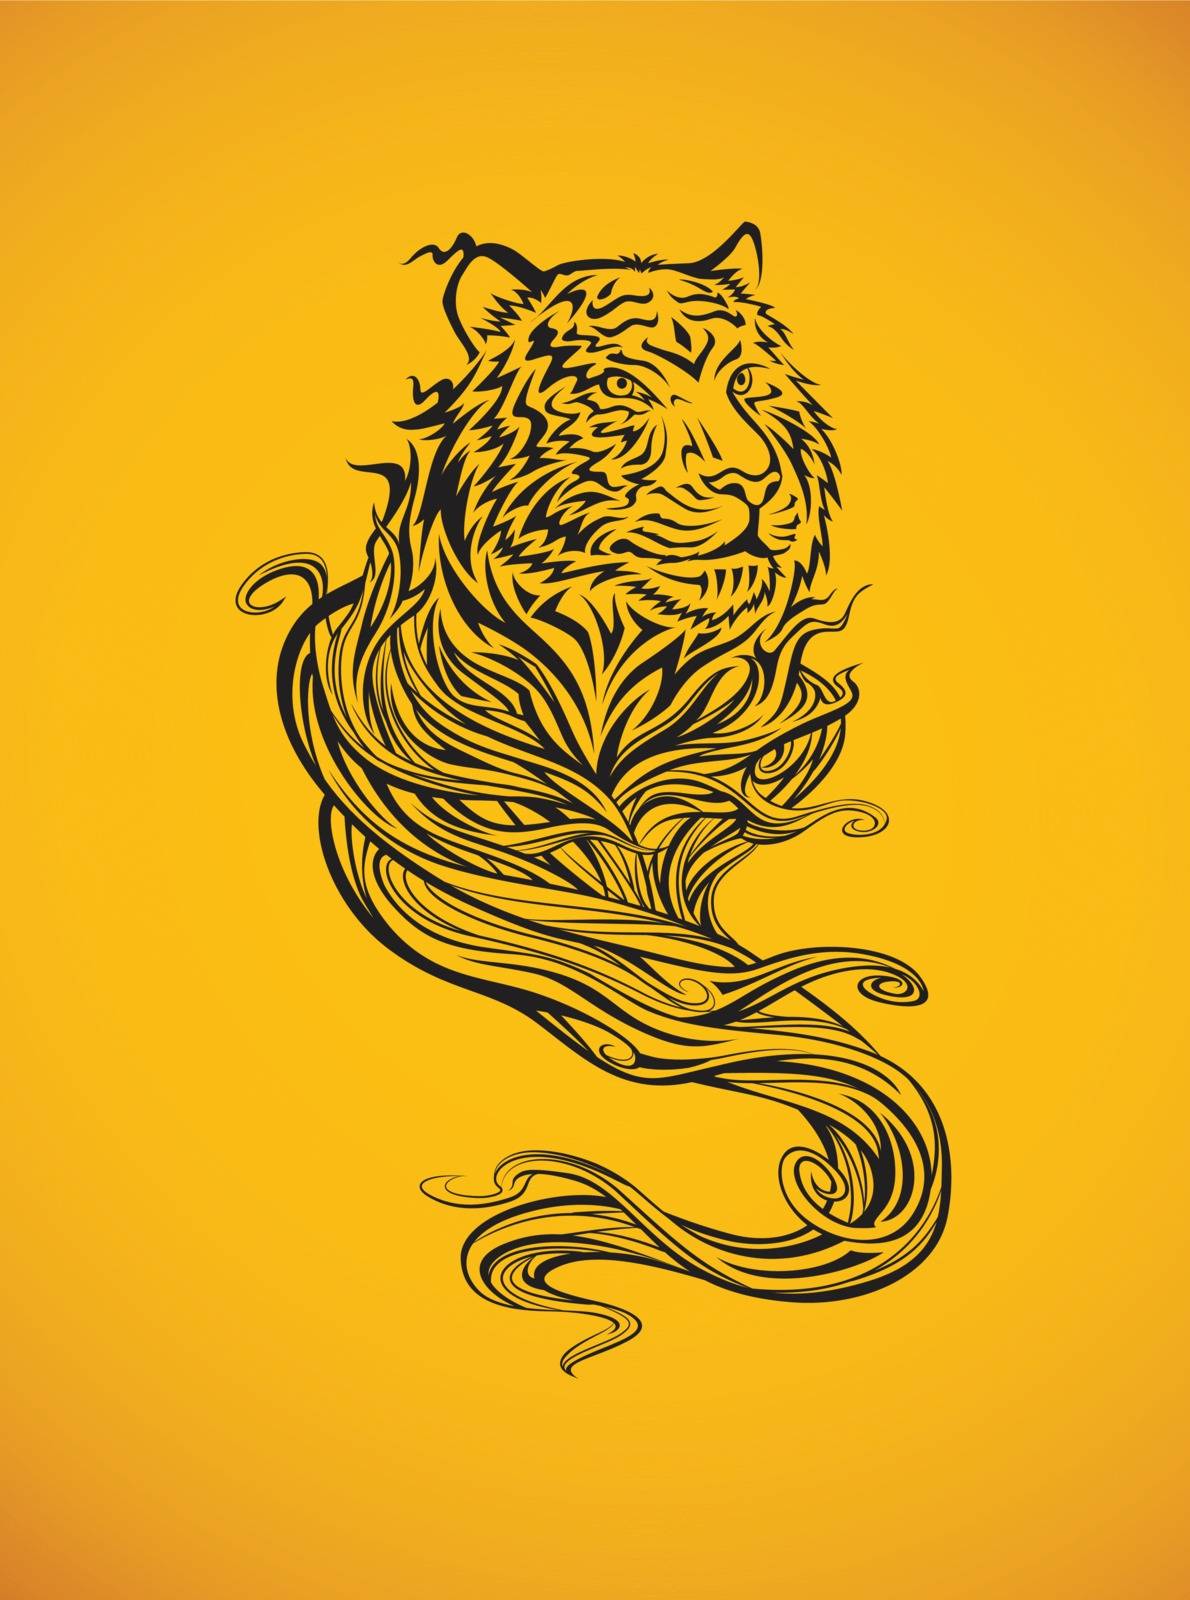 Tiger spirit tribal tattoo